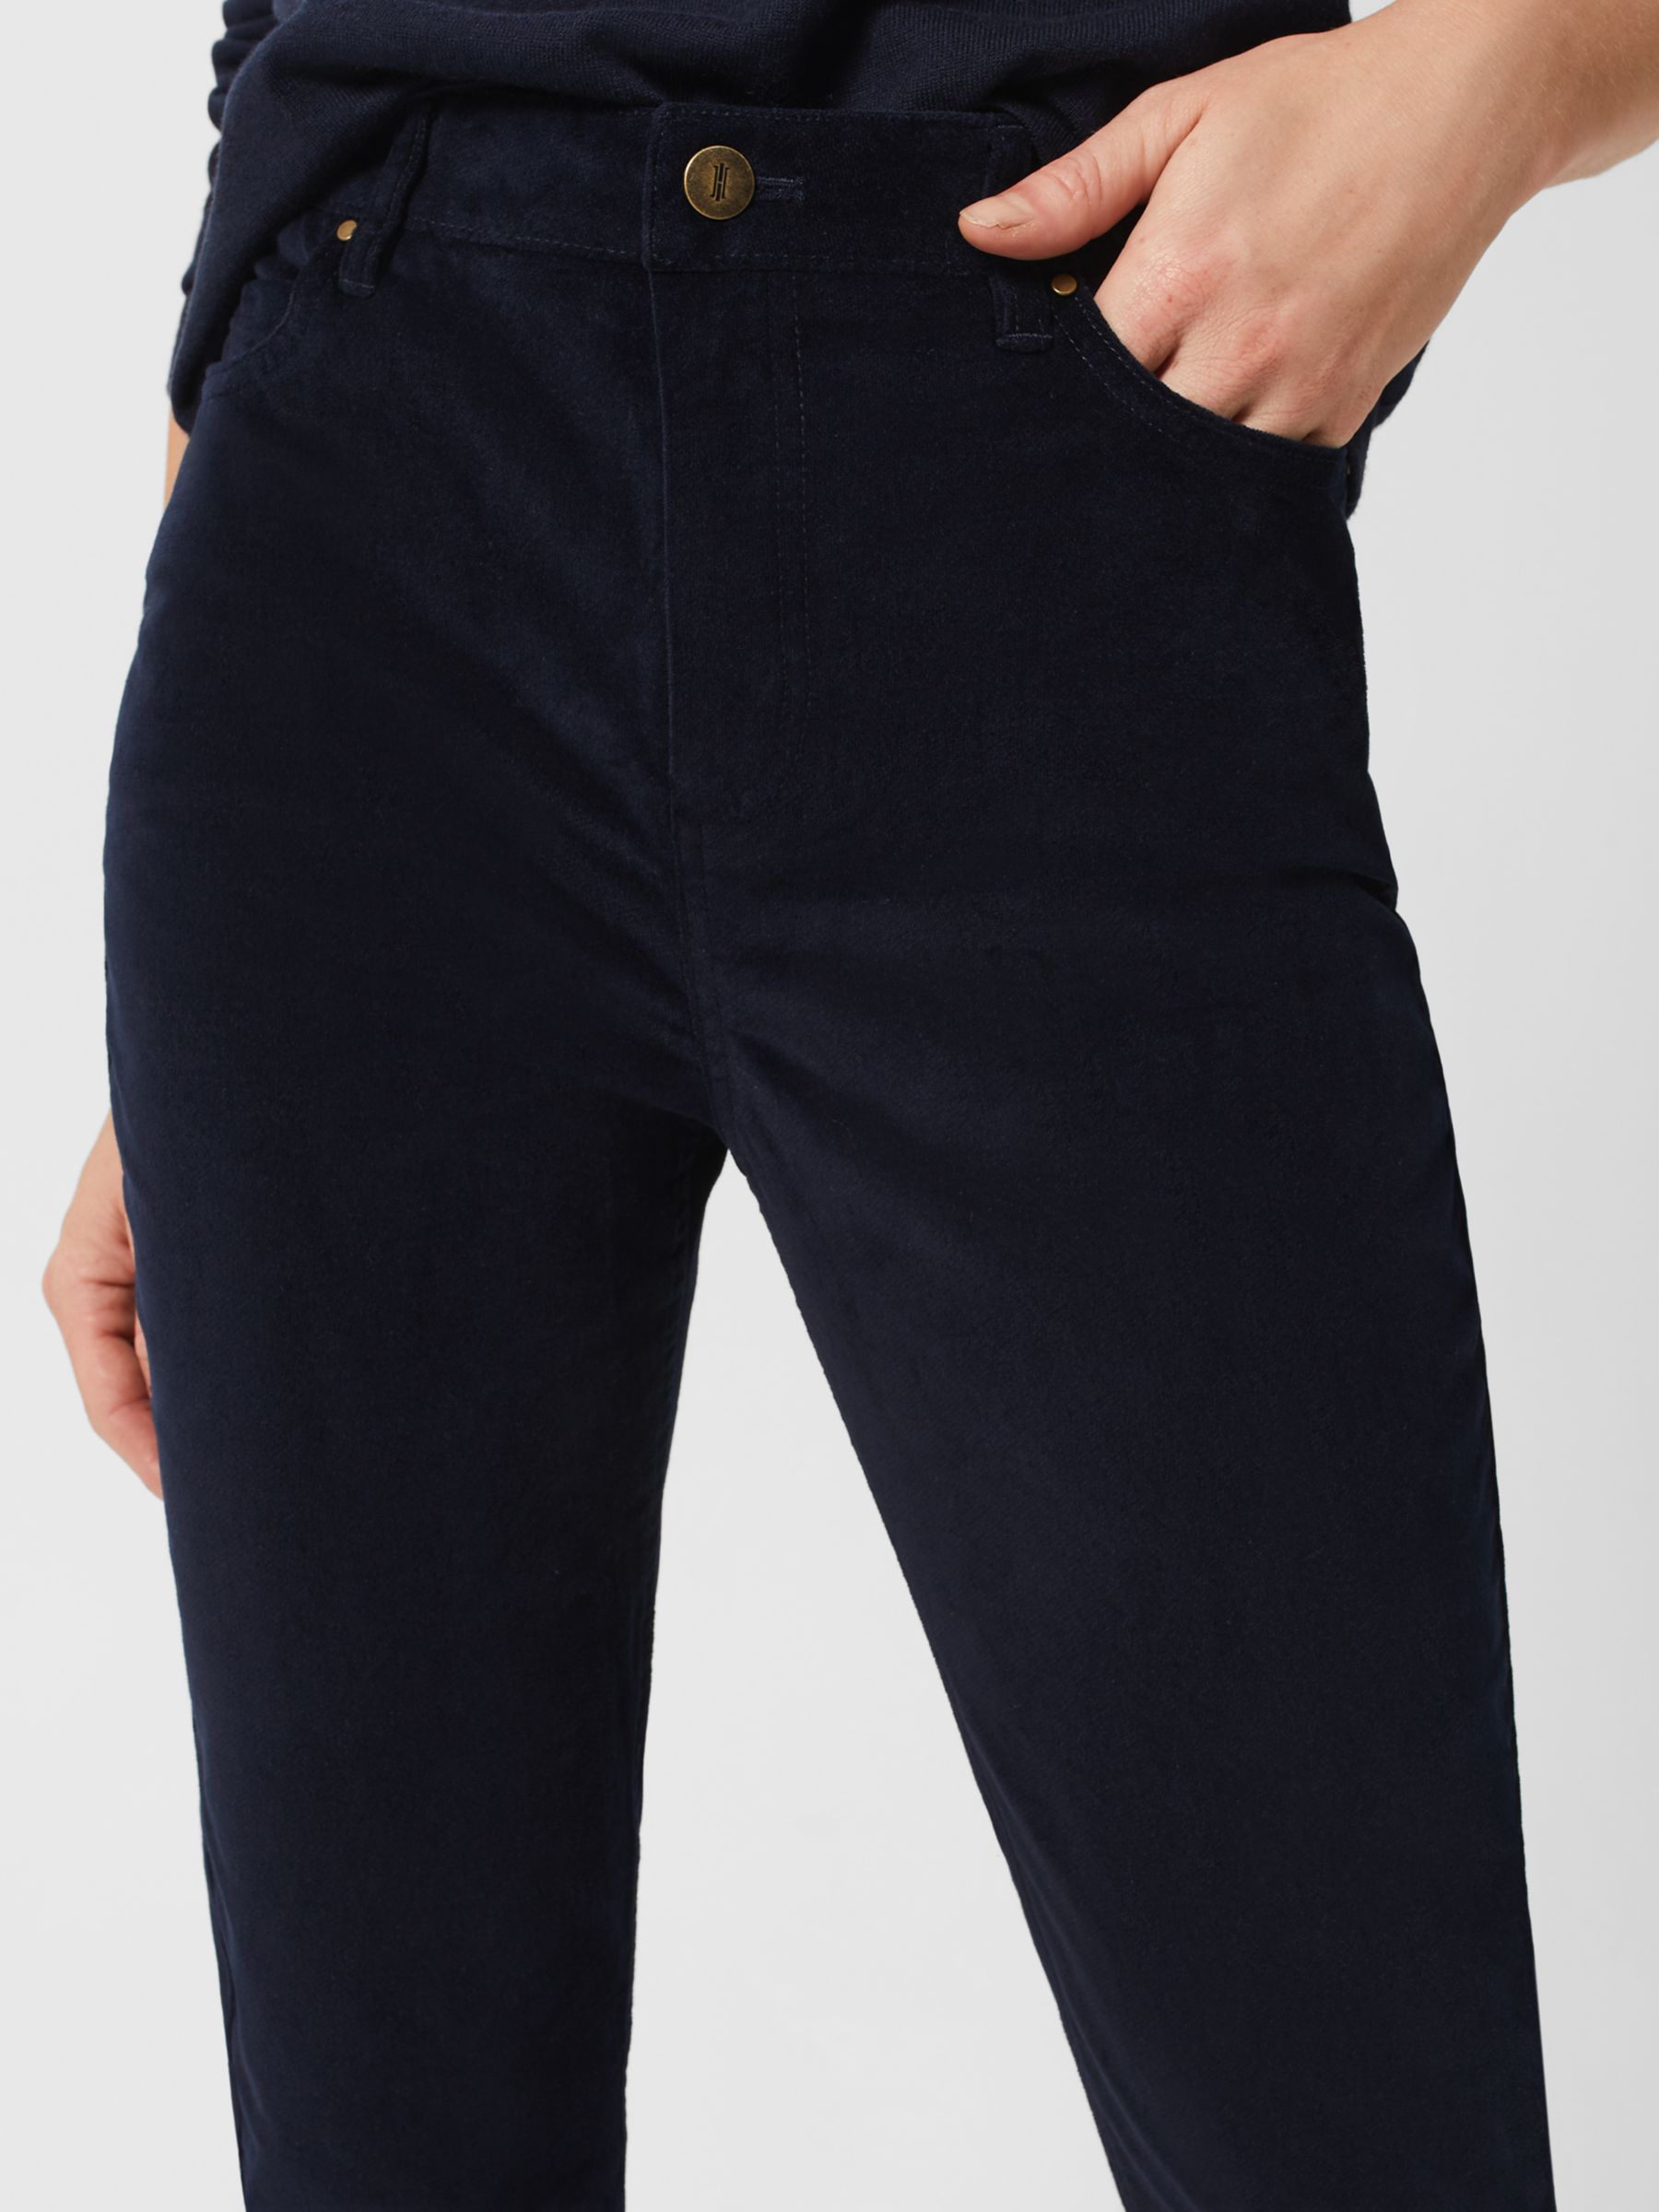 Hobbs Gia Velvet Skinny Jeans, Navy, 6